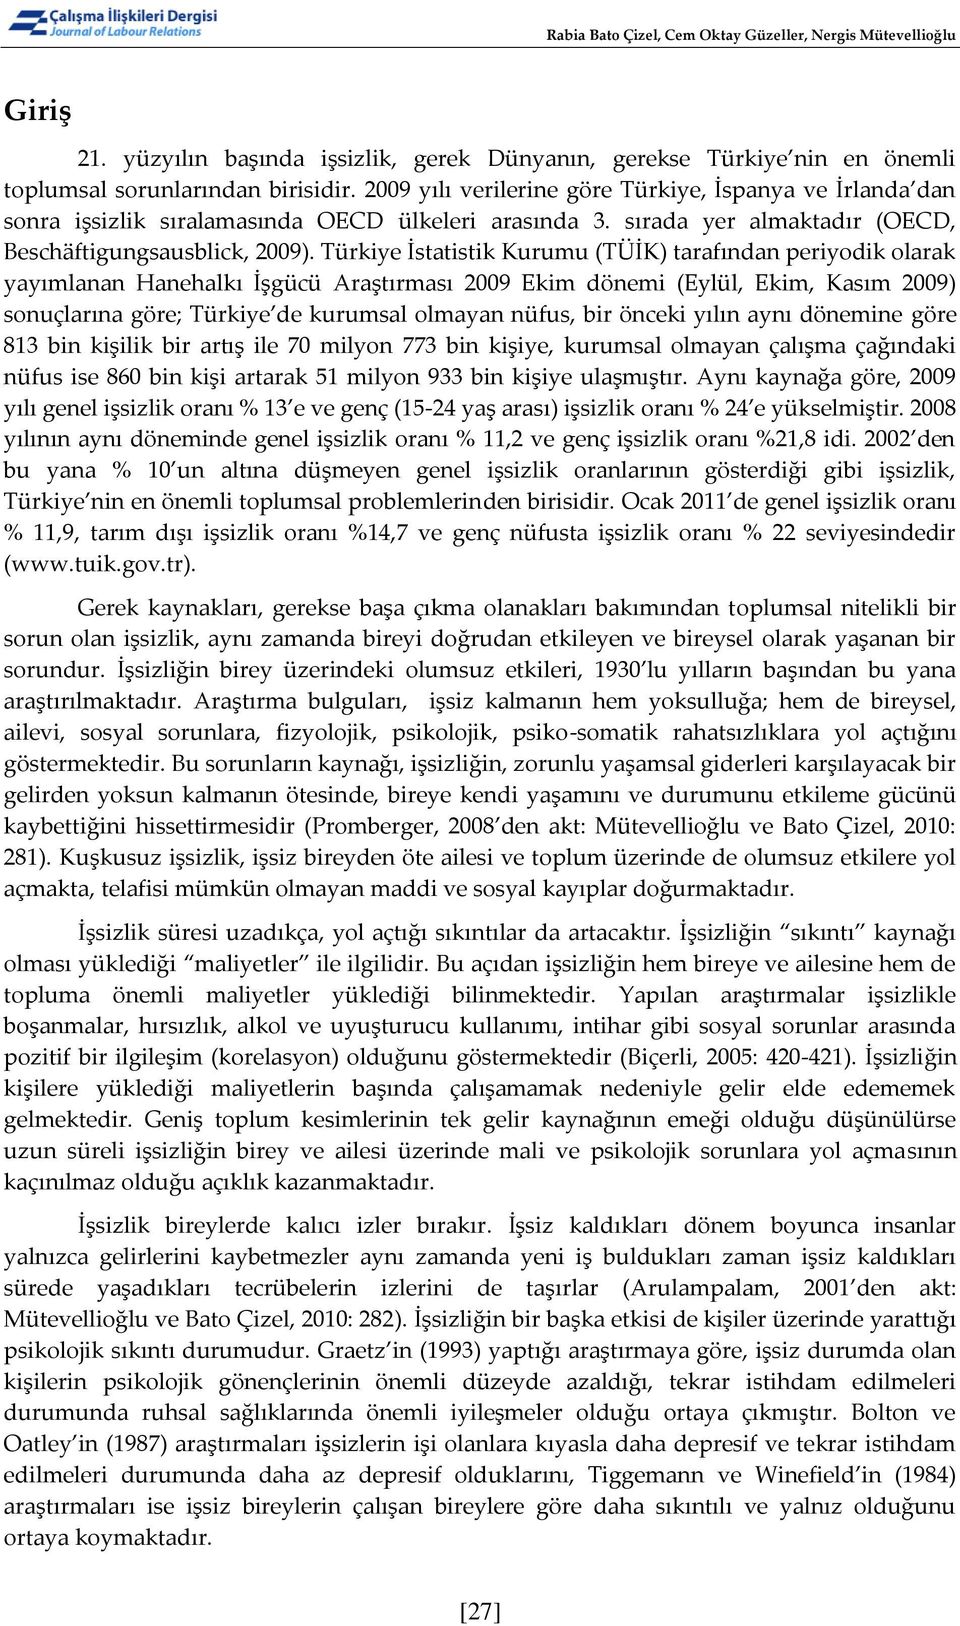 Türkiye İstatistik Kurumu (TÜİK) tarafından periyodik olarak yayımlanan Hanehalkı İşgücü Araştırması 2009 Ekim dönemi (Eylül, Ekim, Kasım 2009) sonuçlarına göre; Türkiye de kurumsal olmayan nüfus,